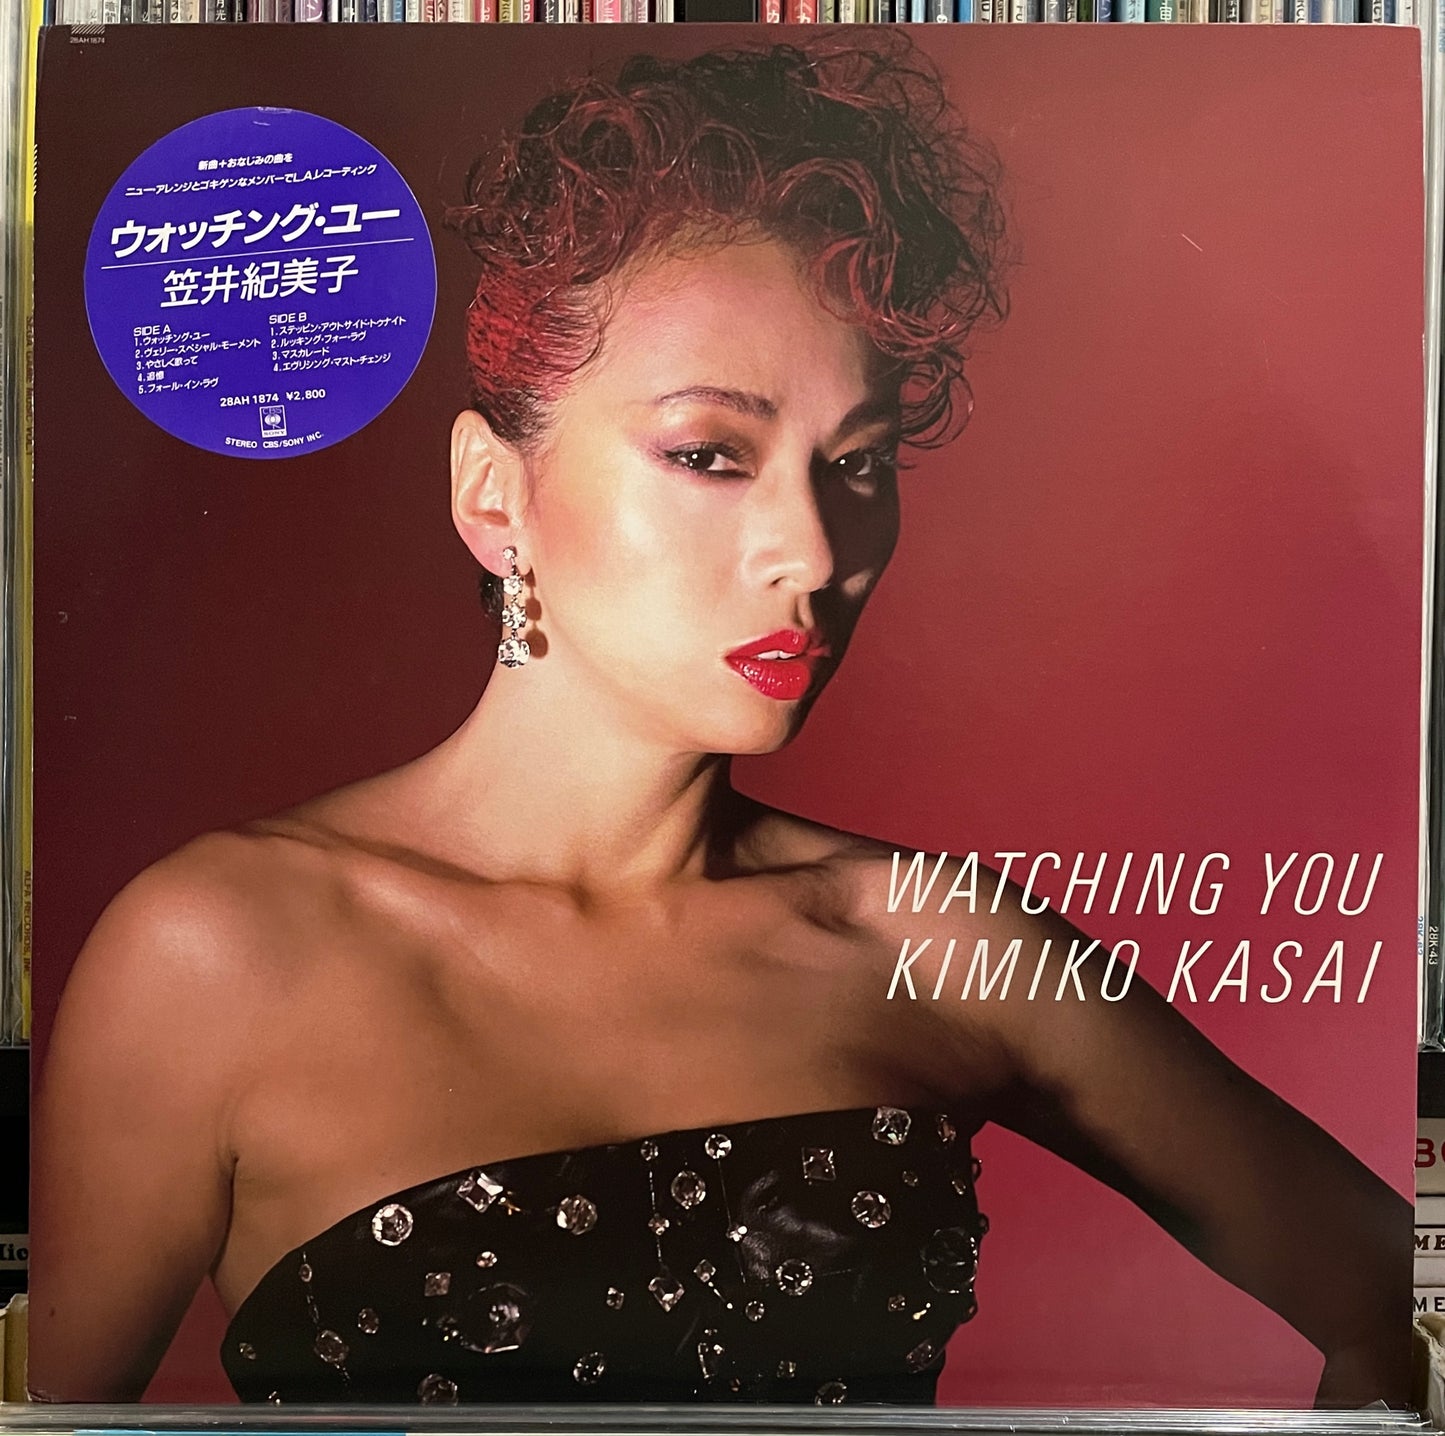 Kimiko Kasai "Watching You" (1985)